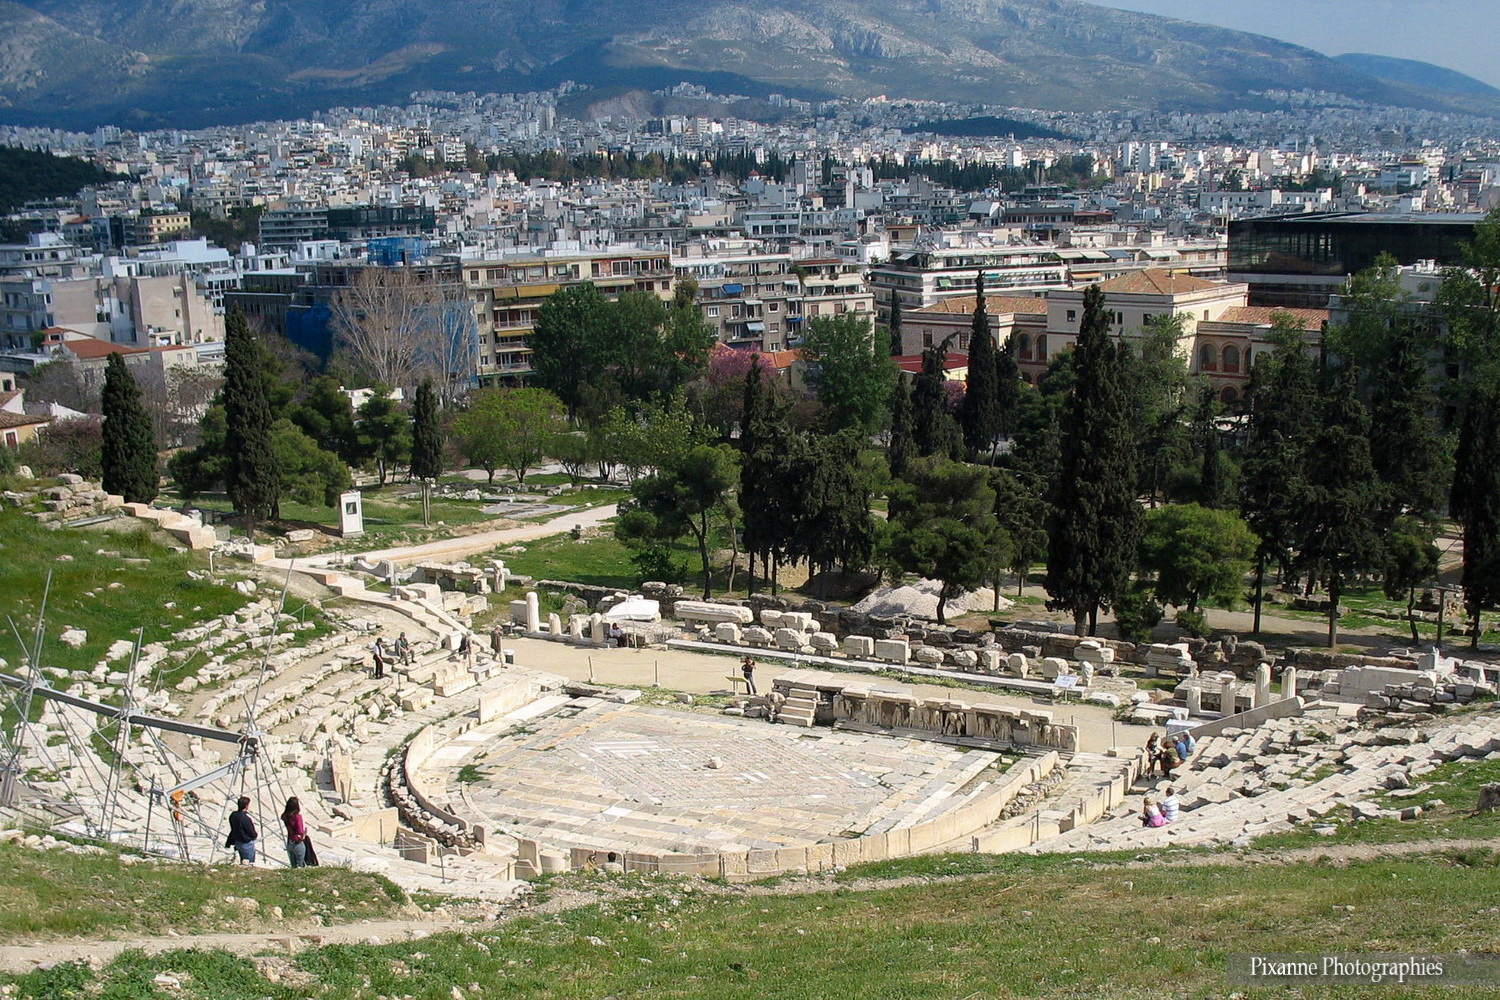 Europe, Grèce, Attique, Athènes, Acropole, Théâtre de Dionysos, Souvenirs de Voyages, Pixanne Photographies